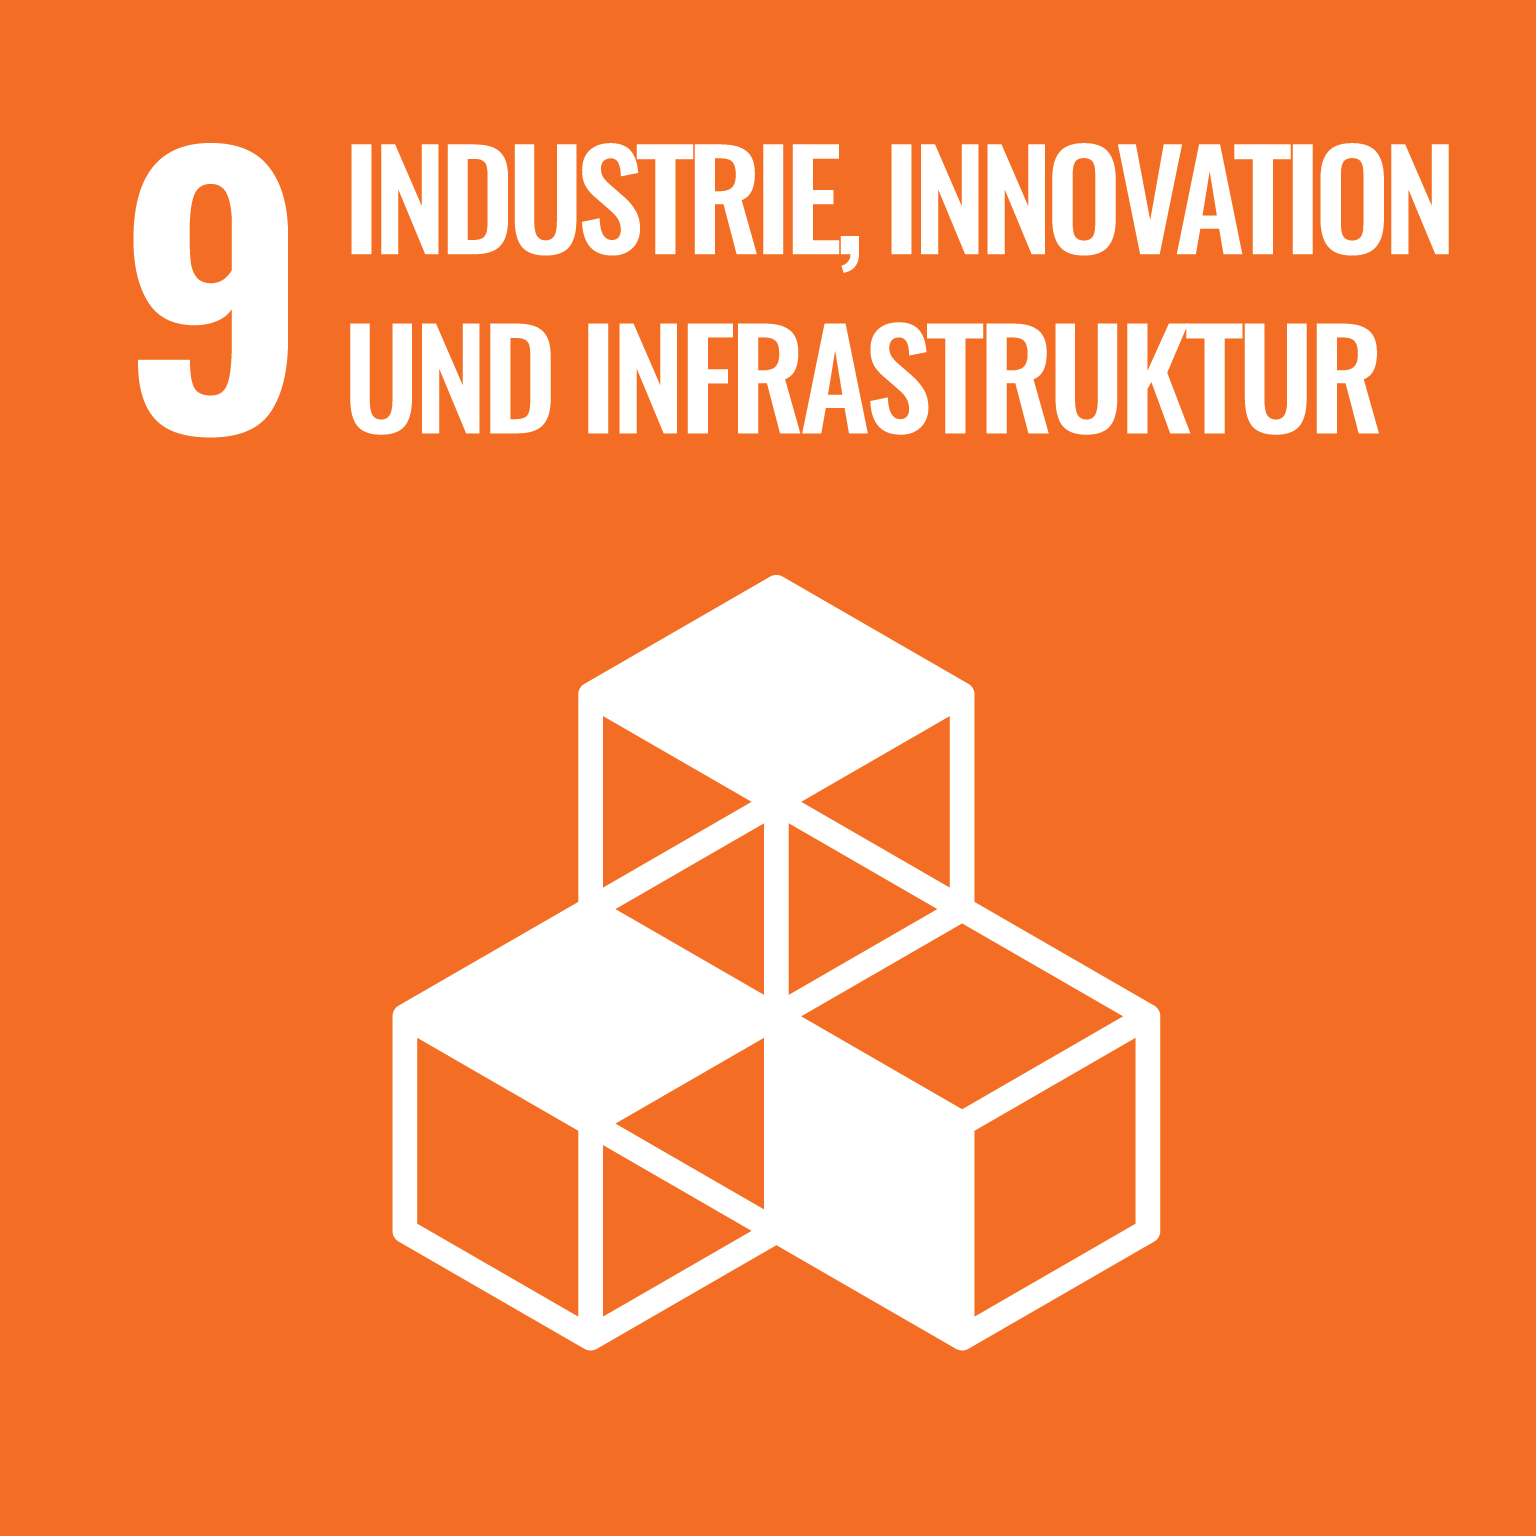 Die Grafik zeigt das Logo des SDGs 9, Industrie, Innovation und Infrastruktur.